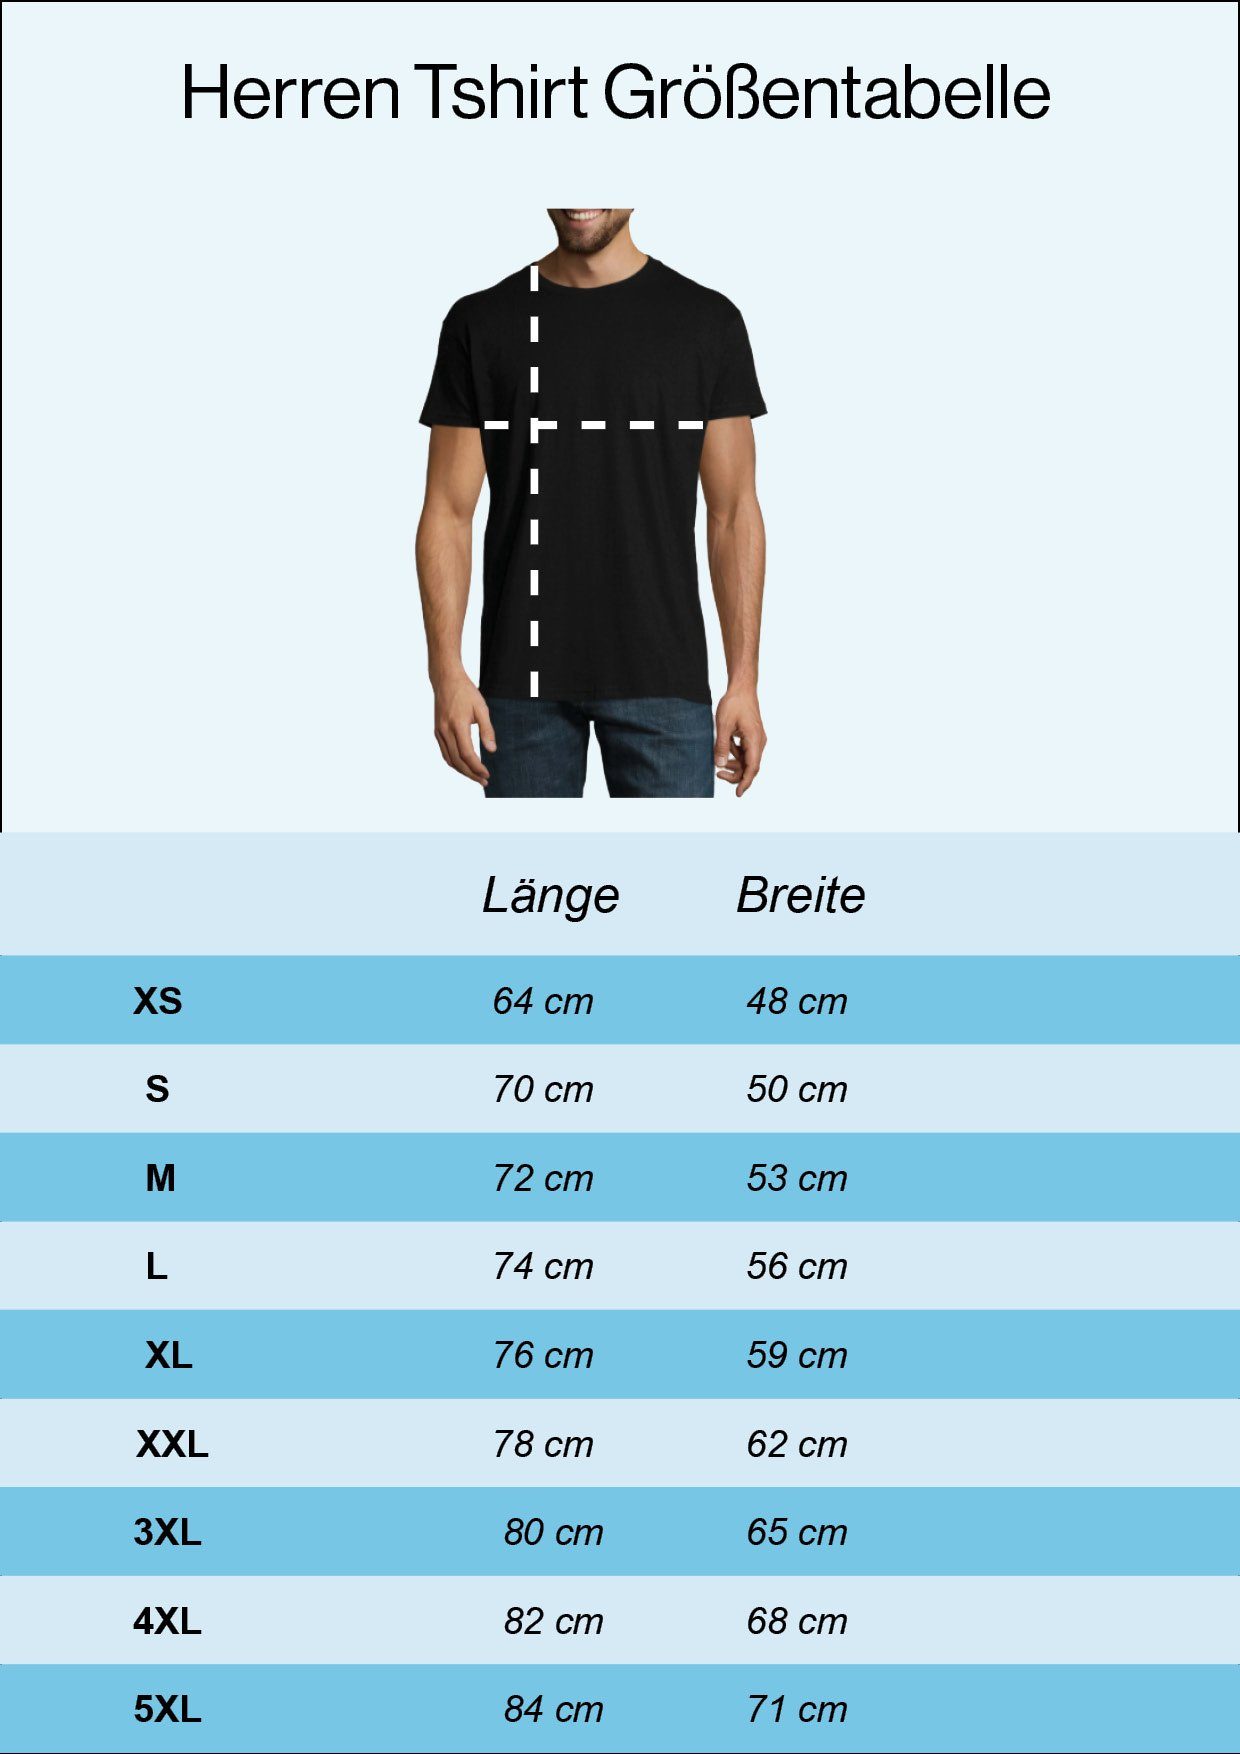 T-Shirt Youth Designz Herren Frontprint Cat Evolution mit Shirt modischem Schwarz